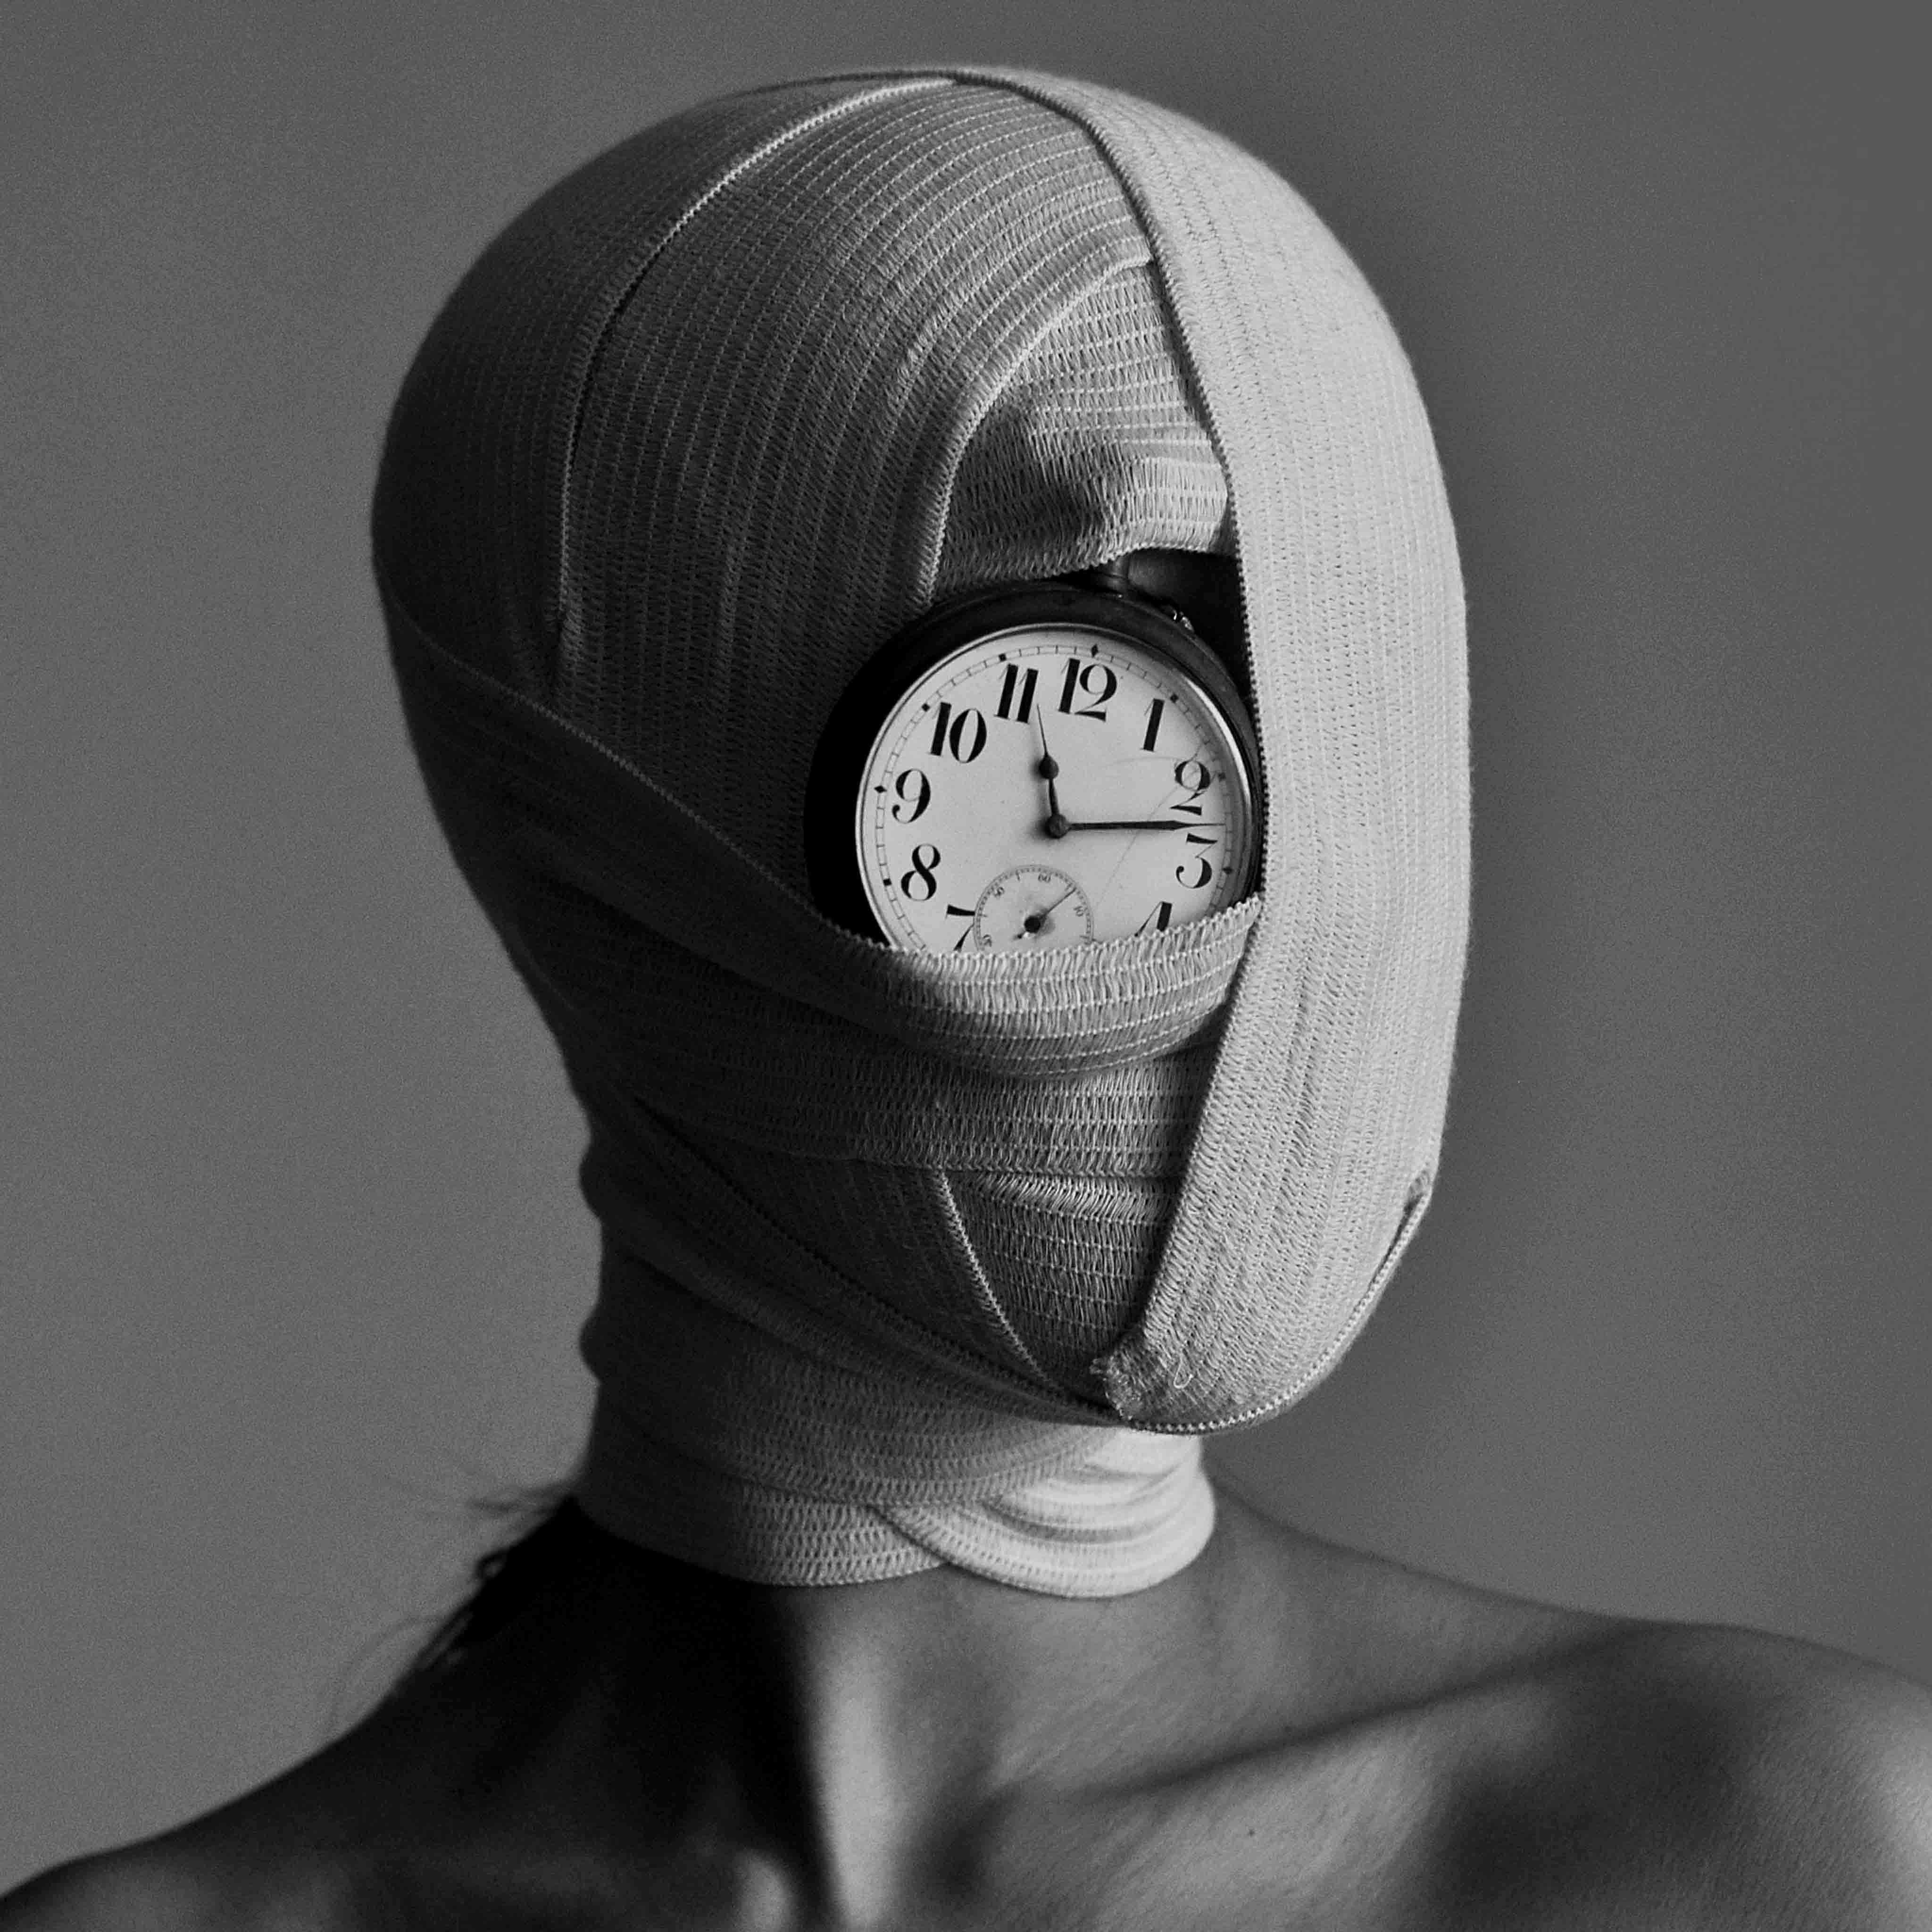 „No Time“ Fotografie 31" x 31" in Auflage von 7 Stück von Olha Stepanian

Gedruckt auf Epson Professional Papier
Signiert und nummeriert vom Künstler 

Nicht gerahmt. Wird in einer Tube geliefert. 

Verfügbare Größen:			
Auflage von 24 Stück			16" x